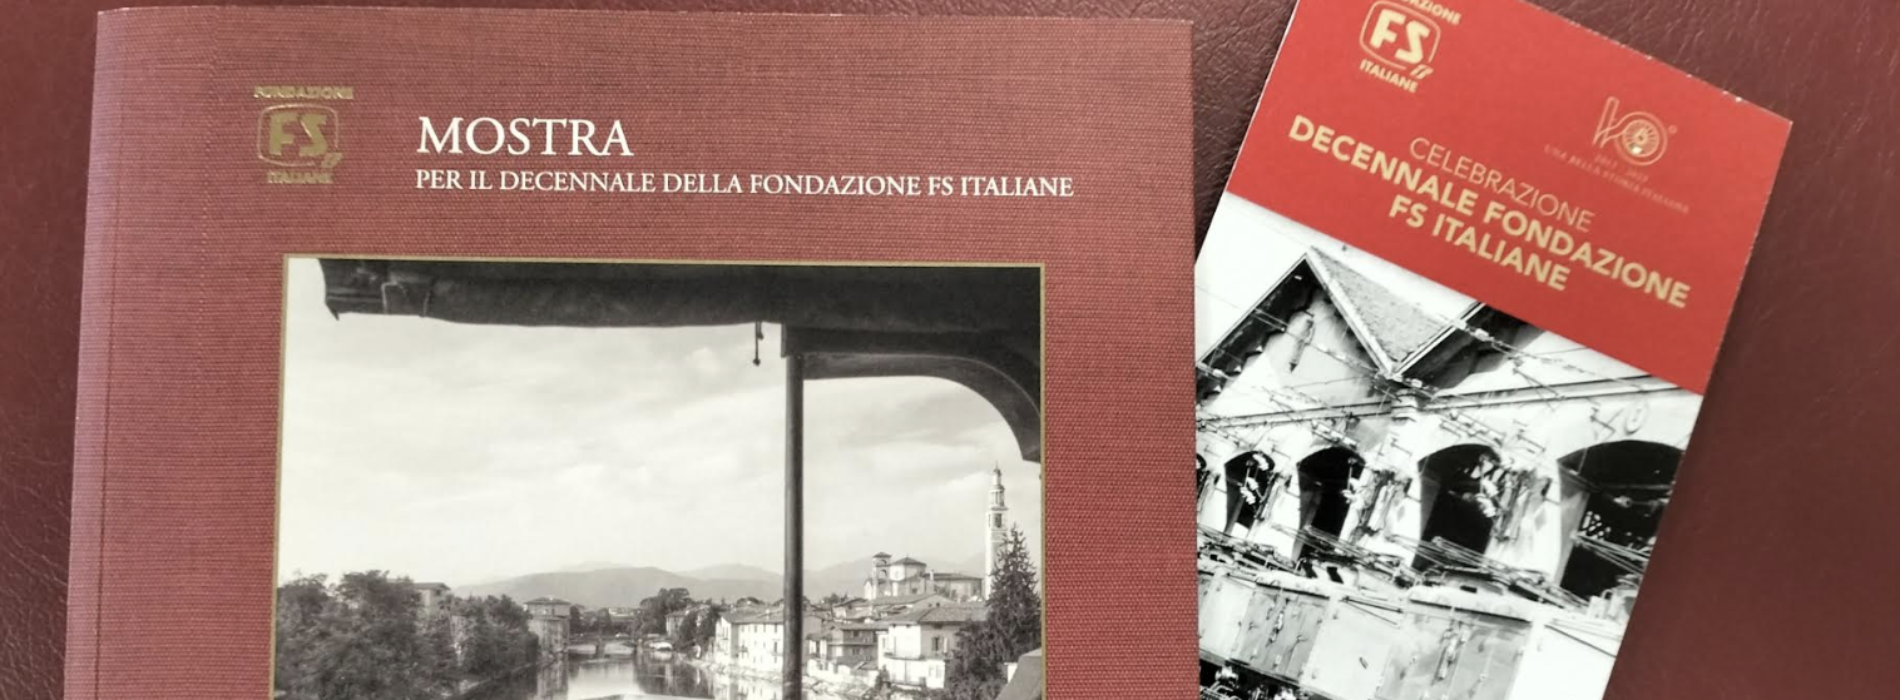 Fondazione FS, mostra a Pietrarsa “Una bella storia italiana”